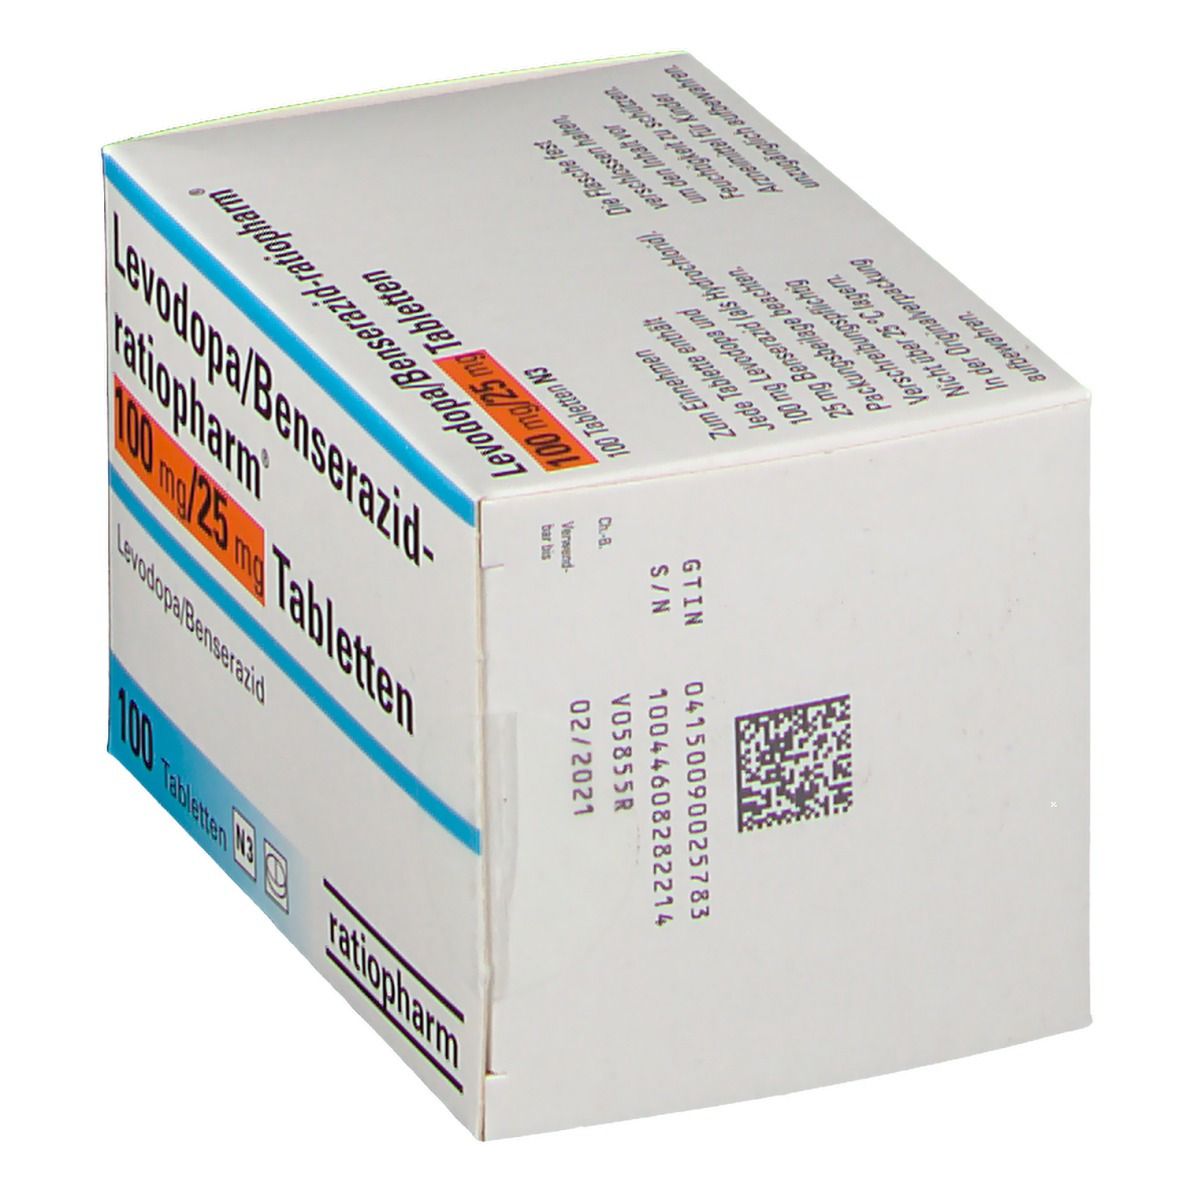 Levodopa/Benserazid-ratiopharm® 100 mg/25 mg